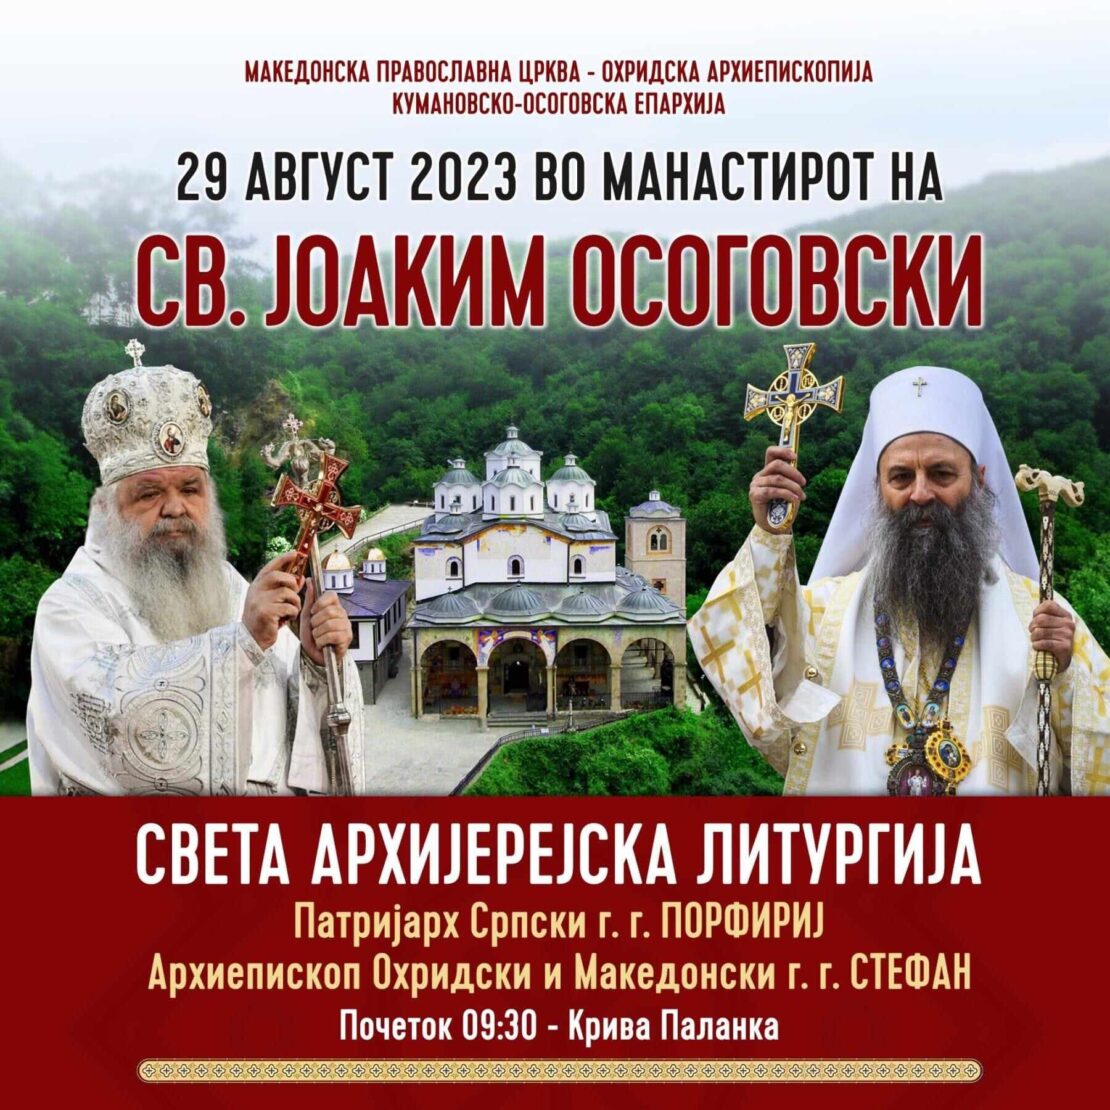 Српскиот патријарх ќе служи во Осоговскиот манастир, што владиката Григориј ќе му раскаже за скеврнавењето на фреските